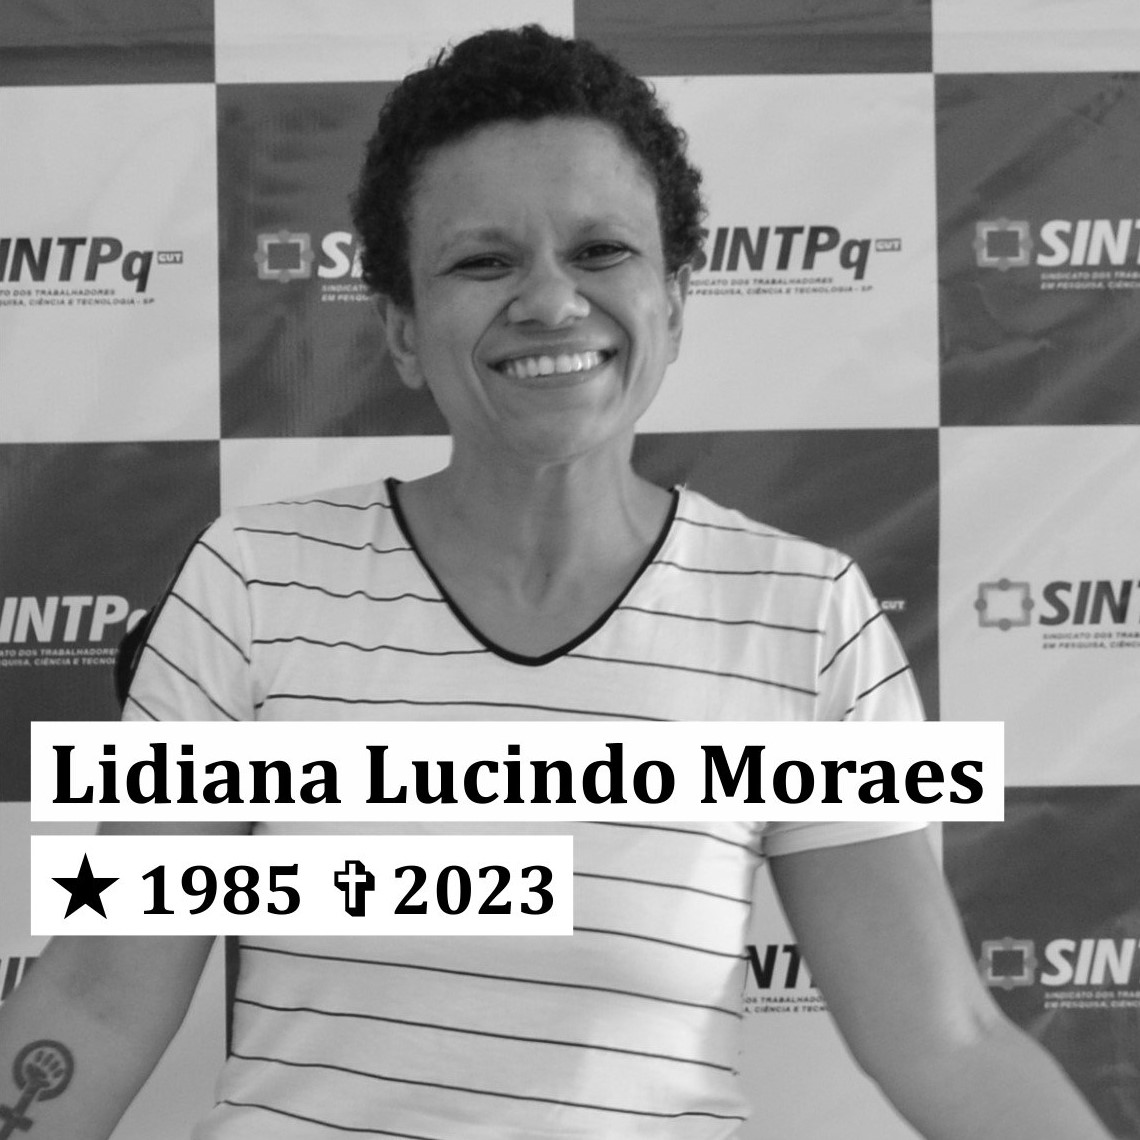 SINTPq lamenta falecimento de sua diretora Lidiana Lucindo Moraes